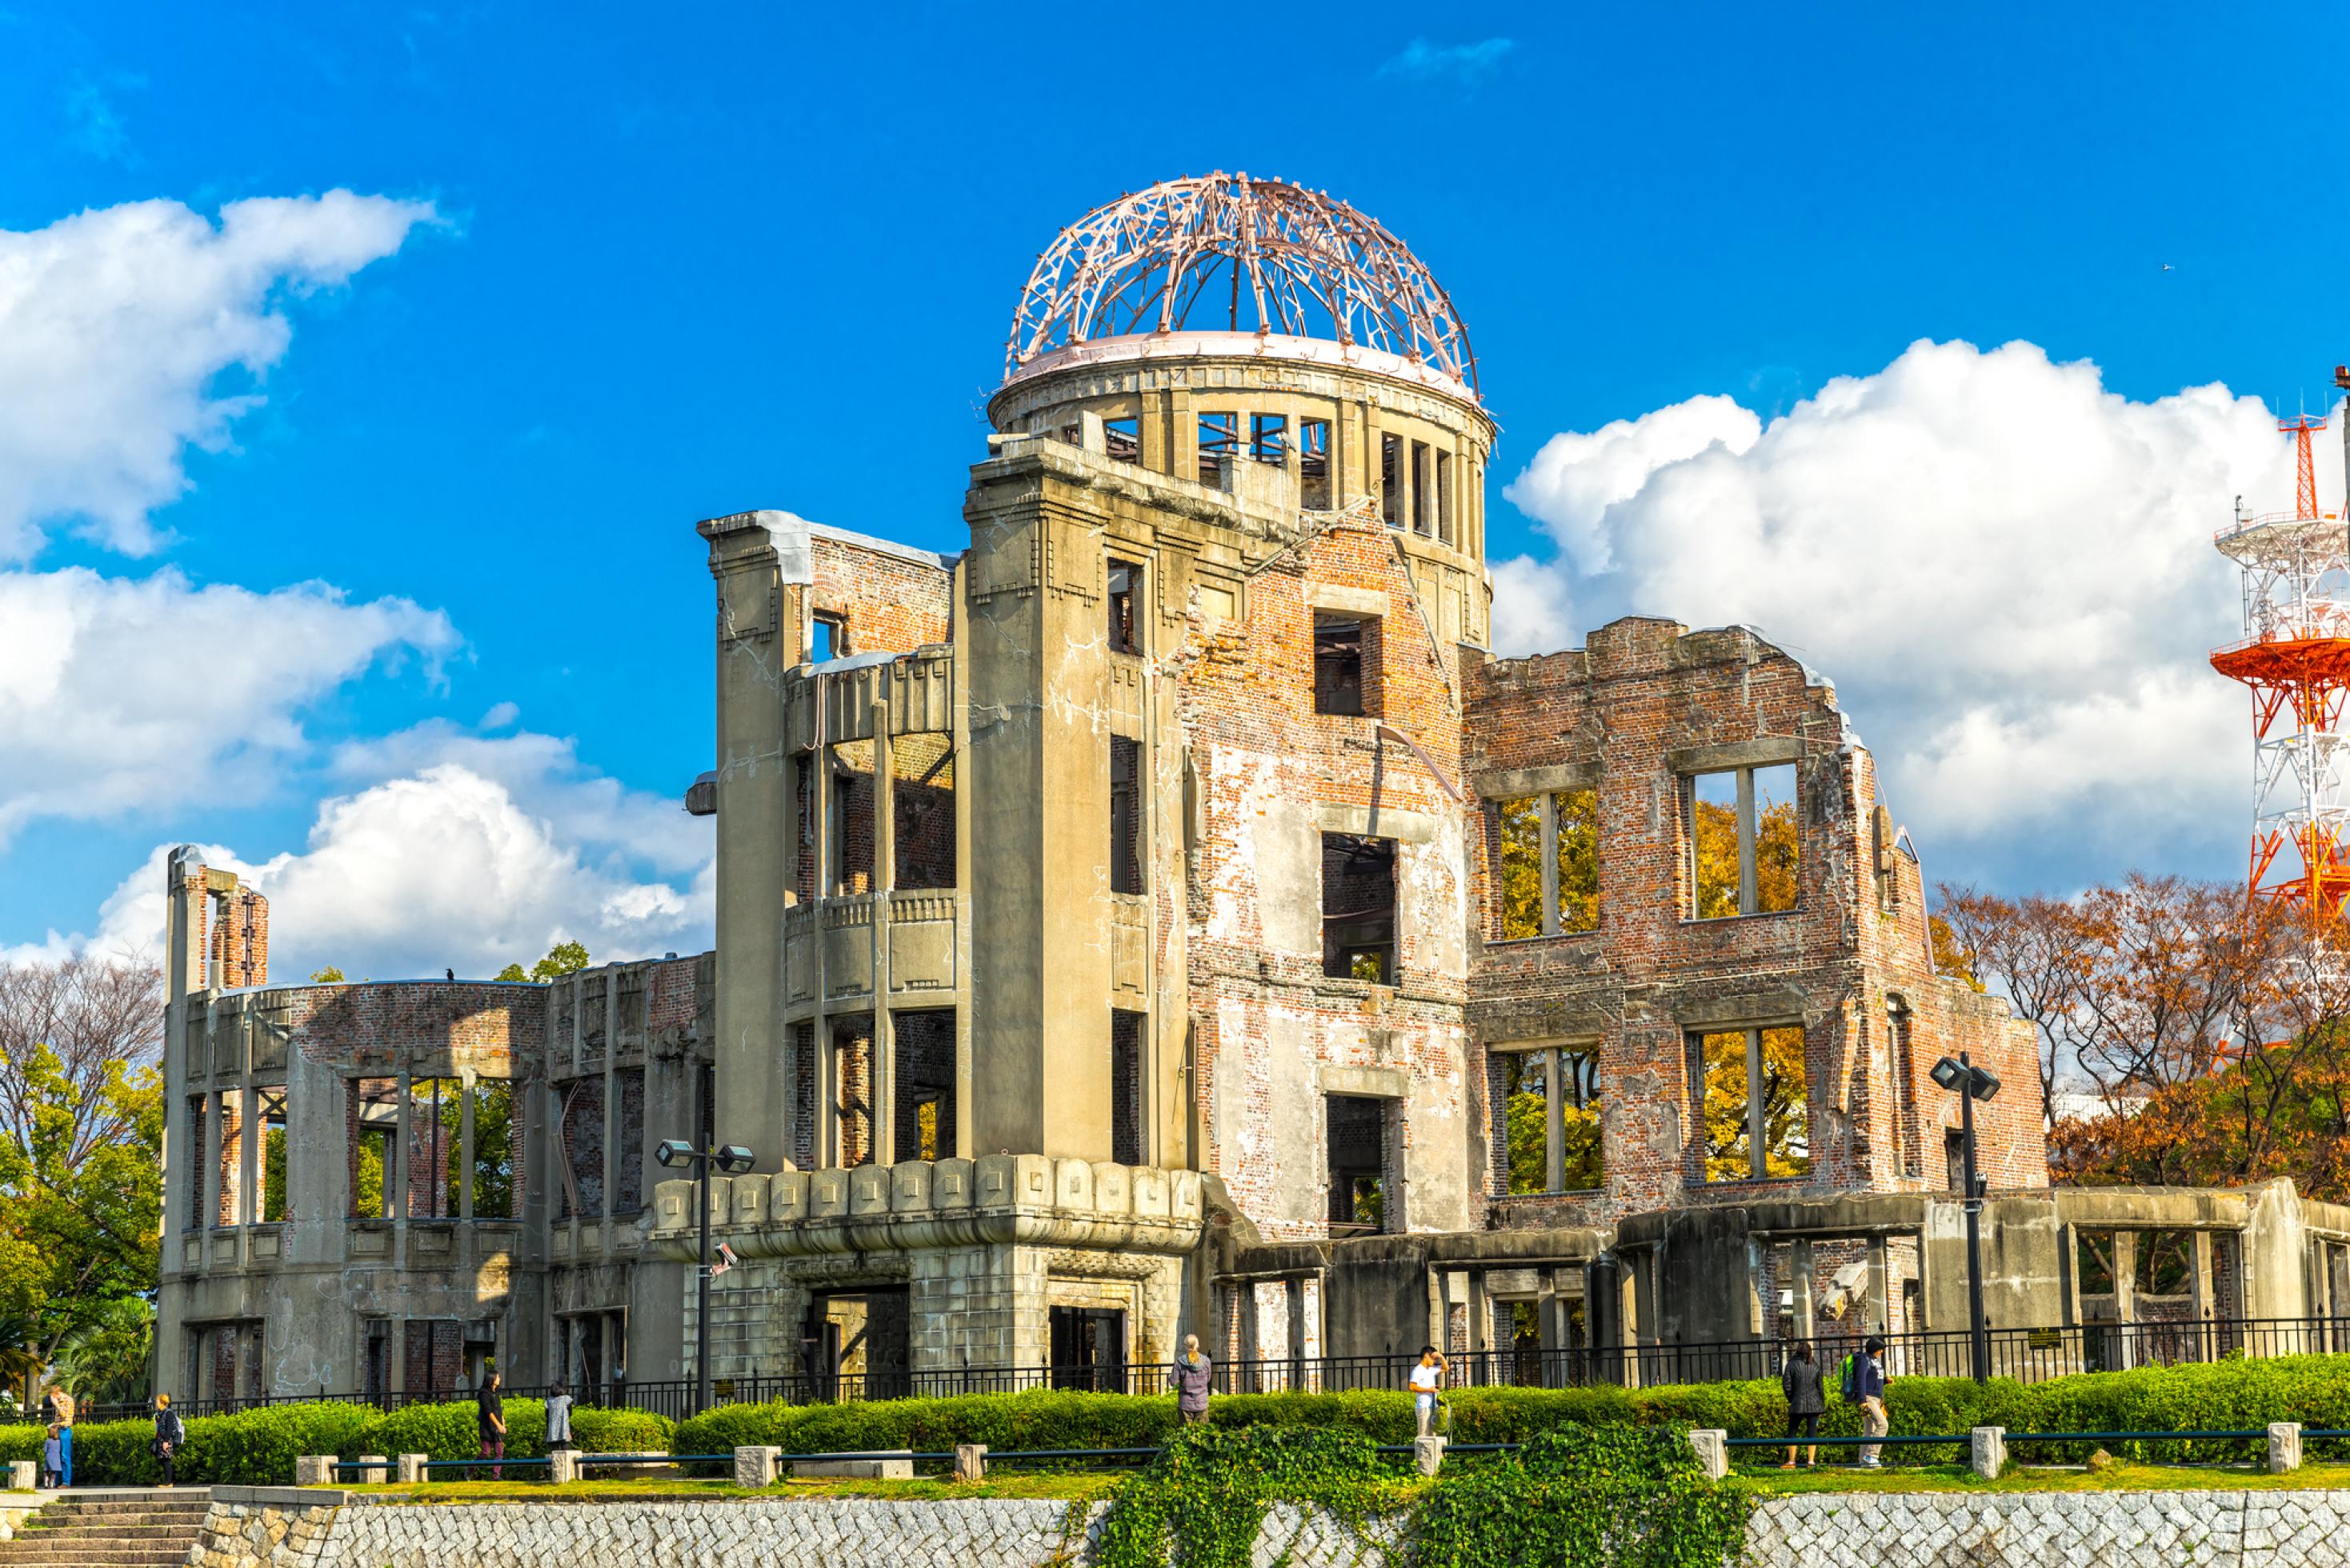 Das Bild zeigt das Friedensdenkmal von Hiroshima, ein von der Atombombe zerstörtes Gebäude mit einem Eisengerippe als Dach im Zentrum der Stadt.